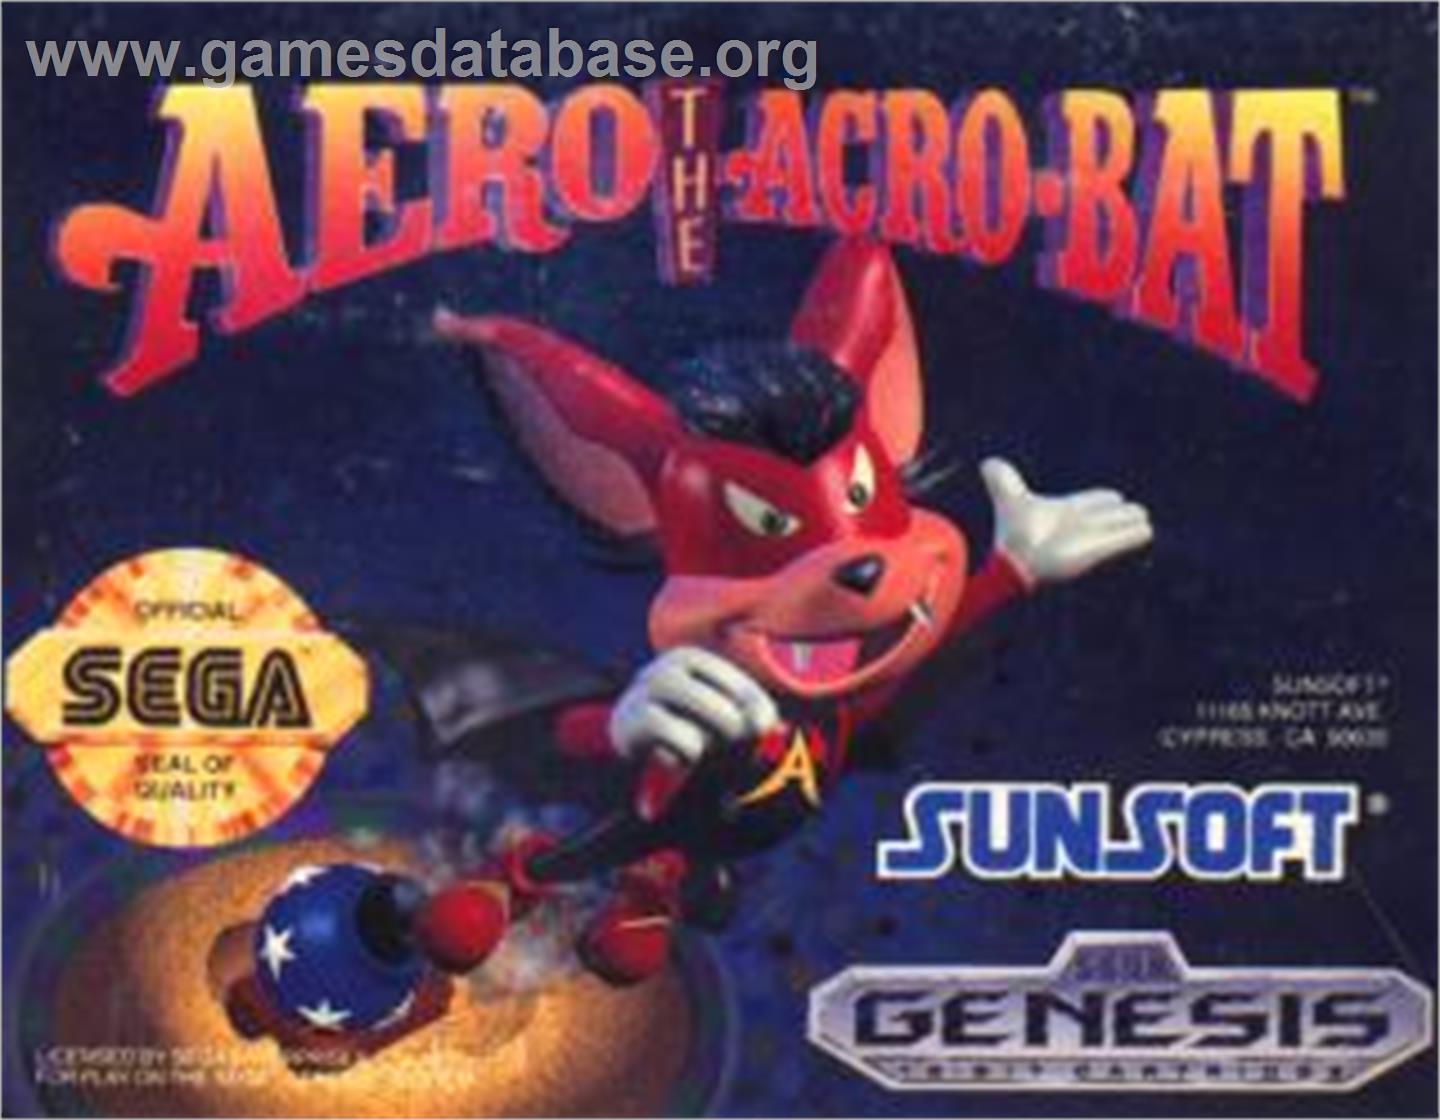 Aero the Acro-Bat - Sega Nomad - Artwork - Cartridge